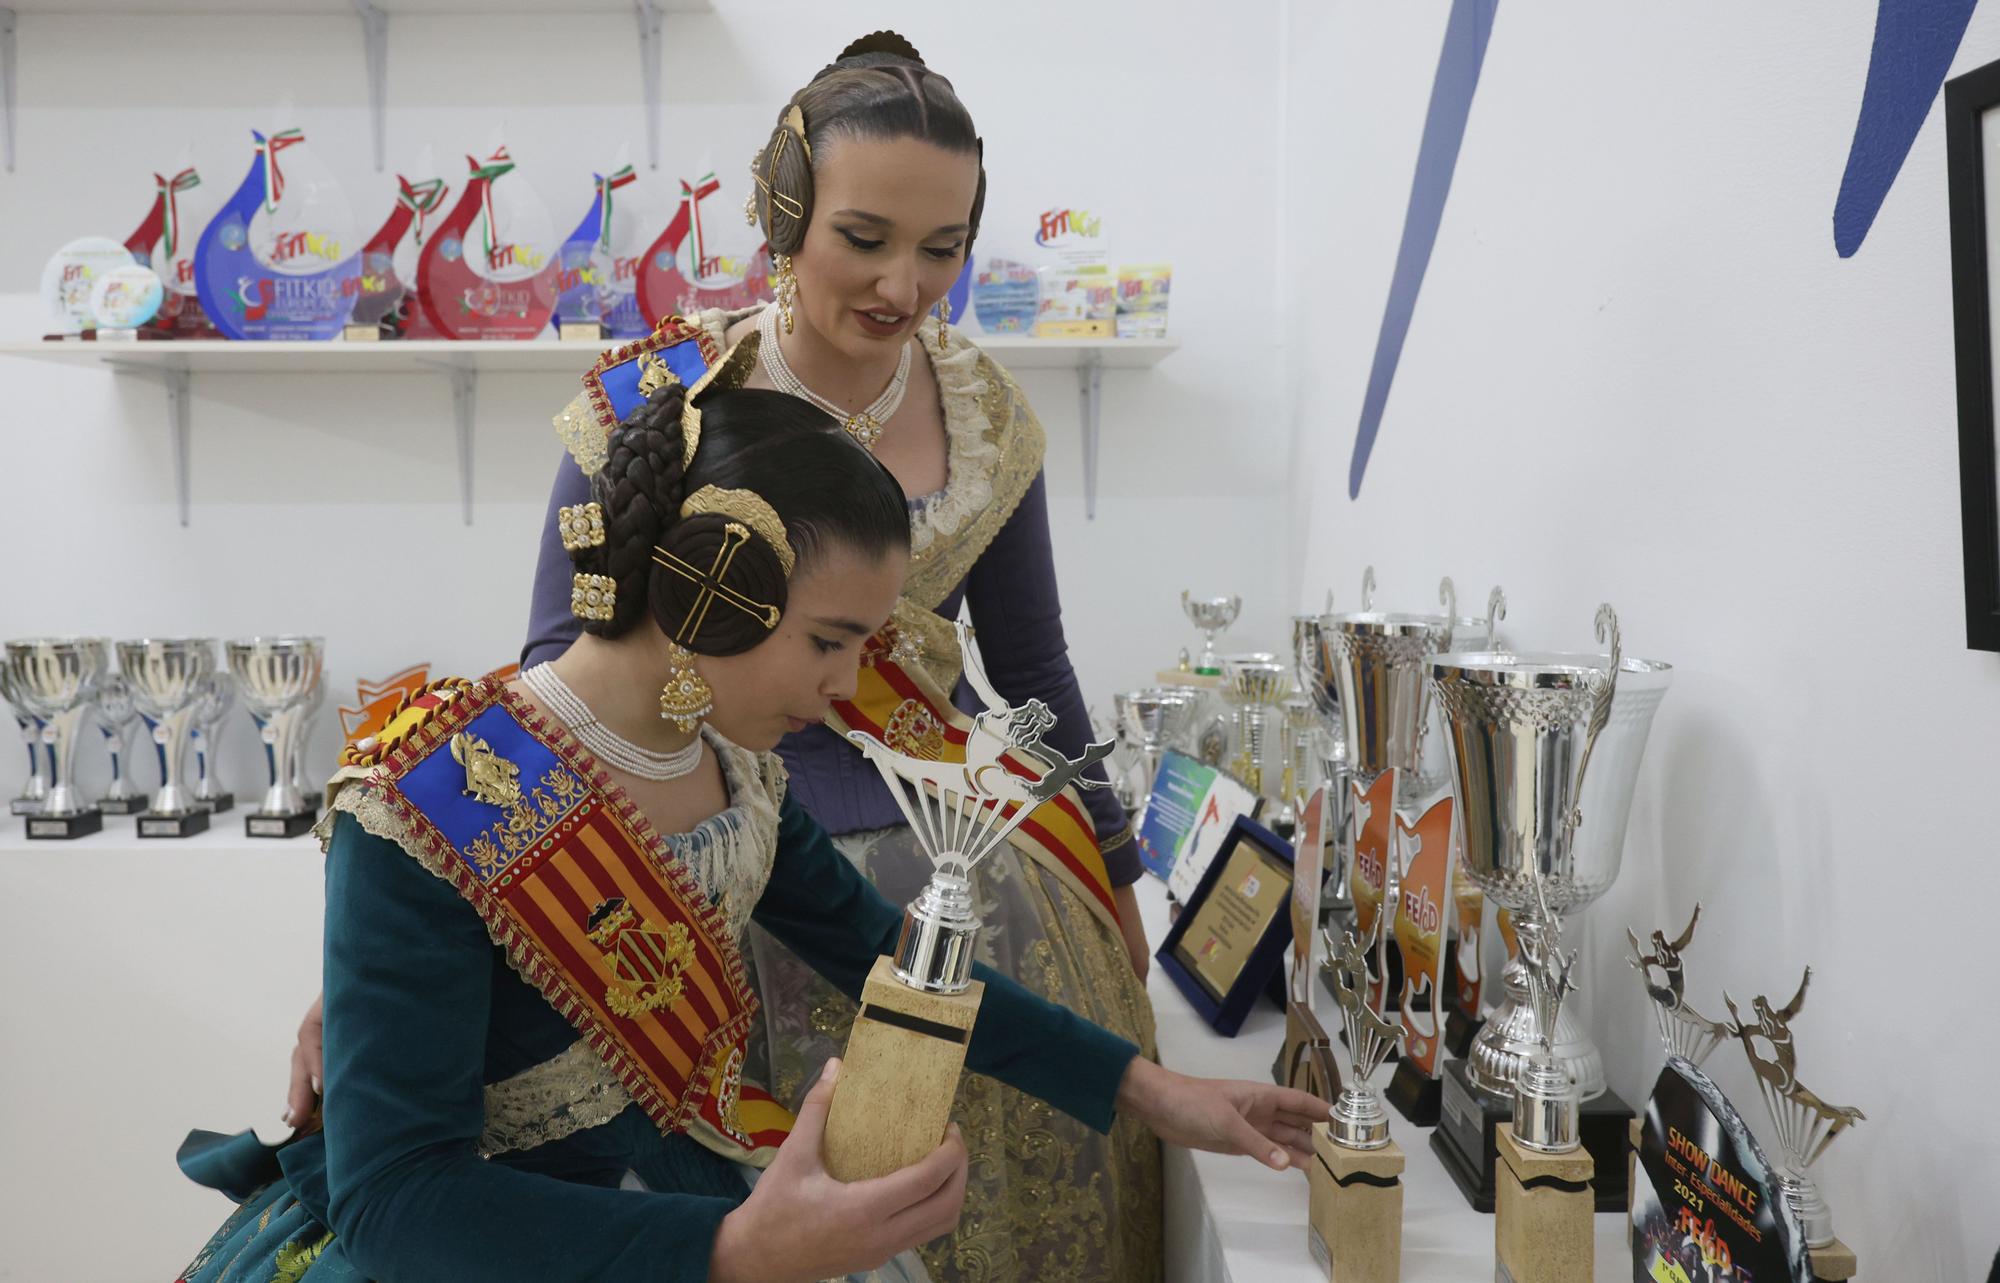 Paula le muestra a Laura el trofeo que ganó en una de sus competiciones.